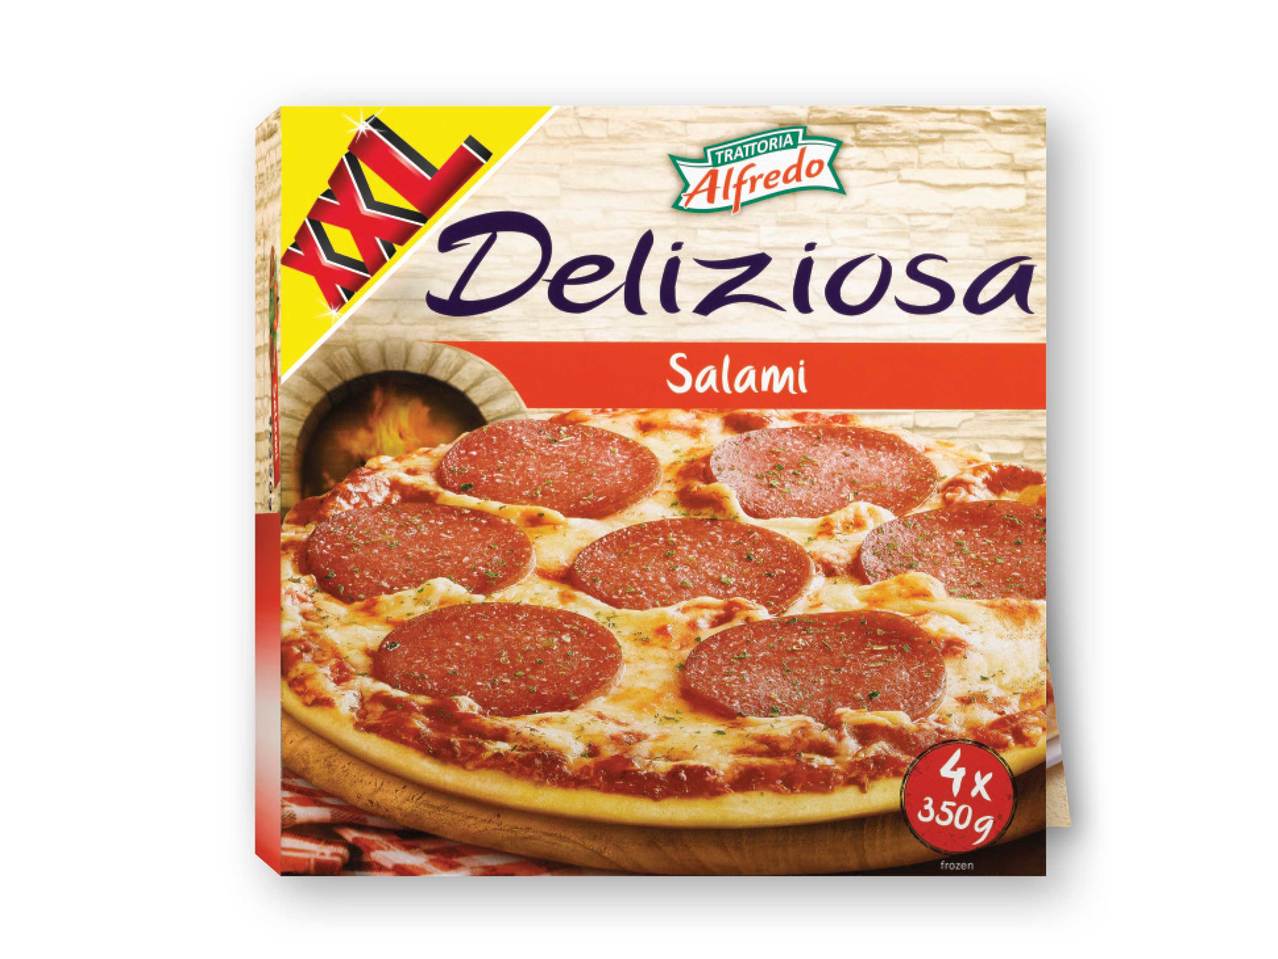 TRATTORIA ALFREDO(R) Salami Pizza